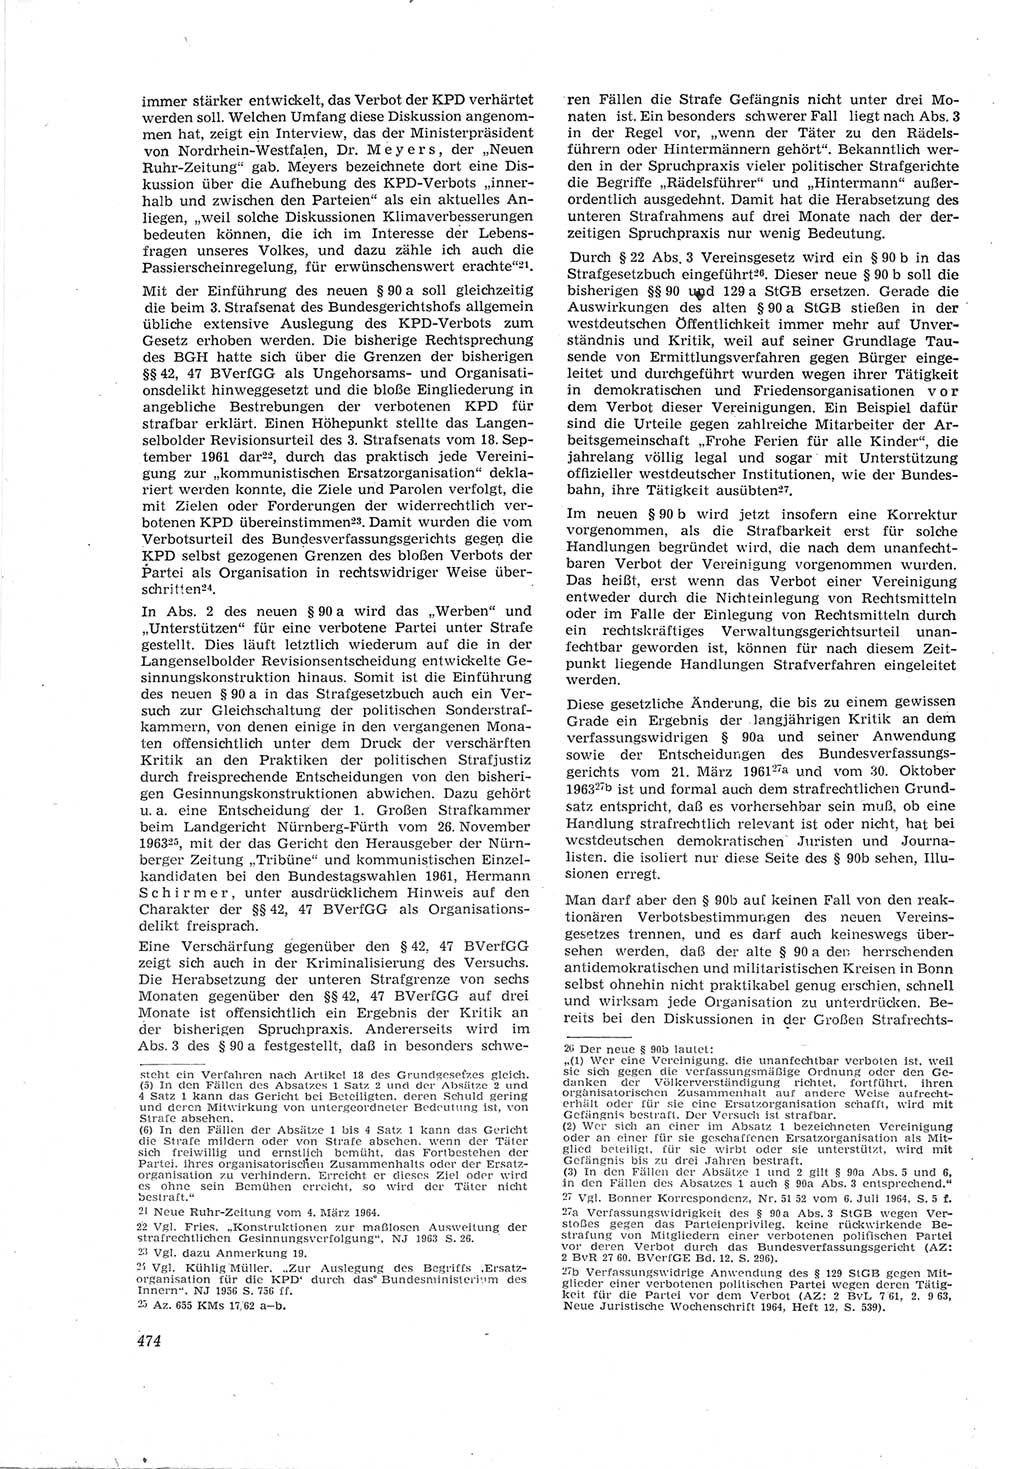 Neue Justiz (NJ), Zeitschrift für Recht und Rechtswissenschaft [Deutsche Demokratische Republik (DDR)], 18. Jahrgang 1964, Seite 474 (NJ DDR 1964, S. 474)